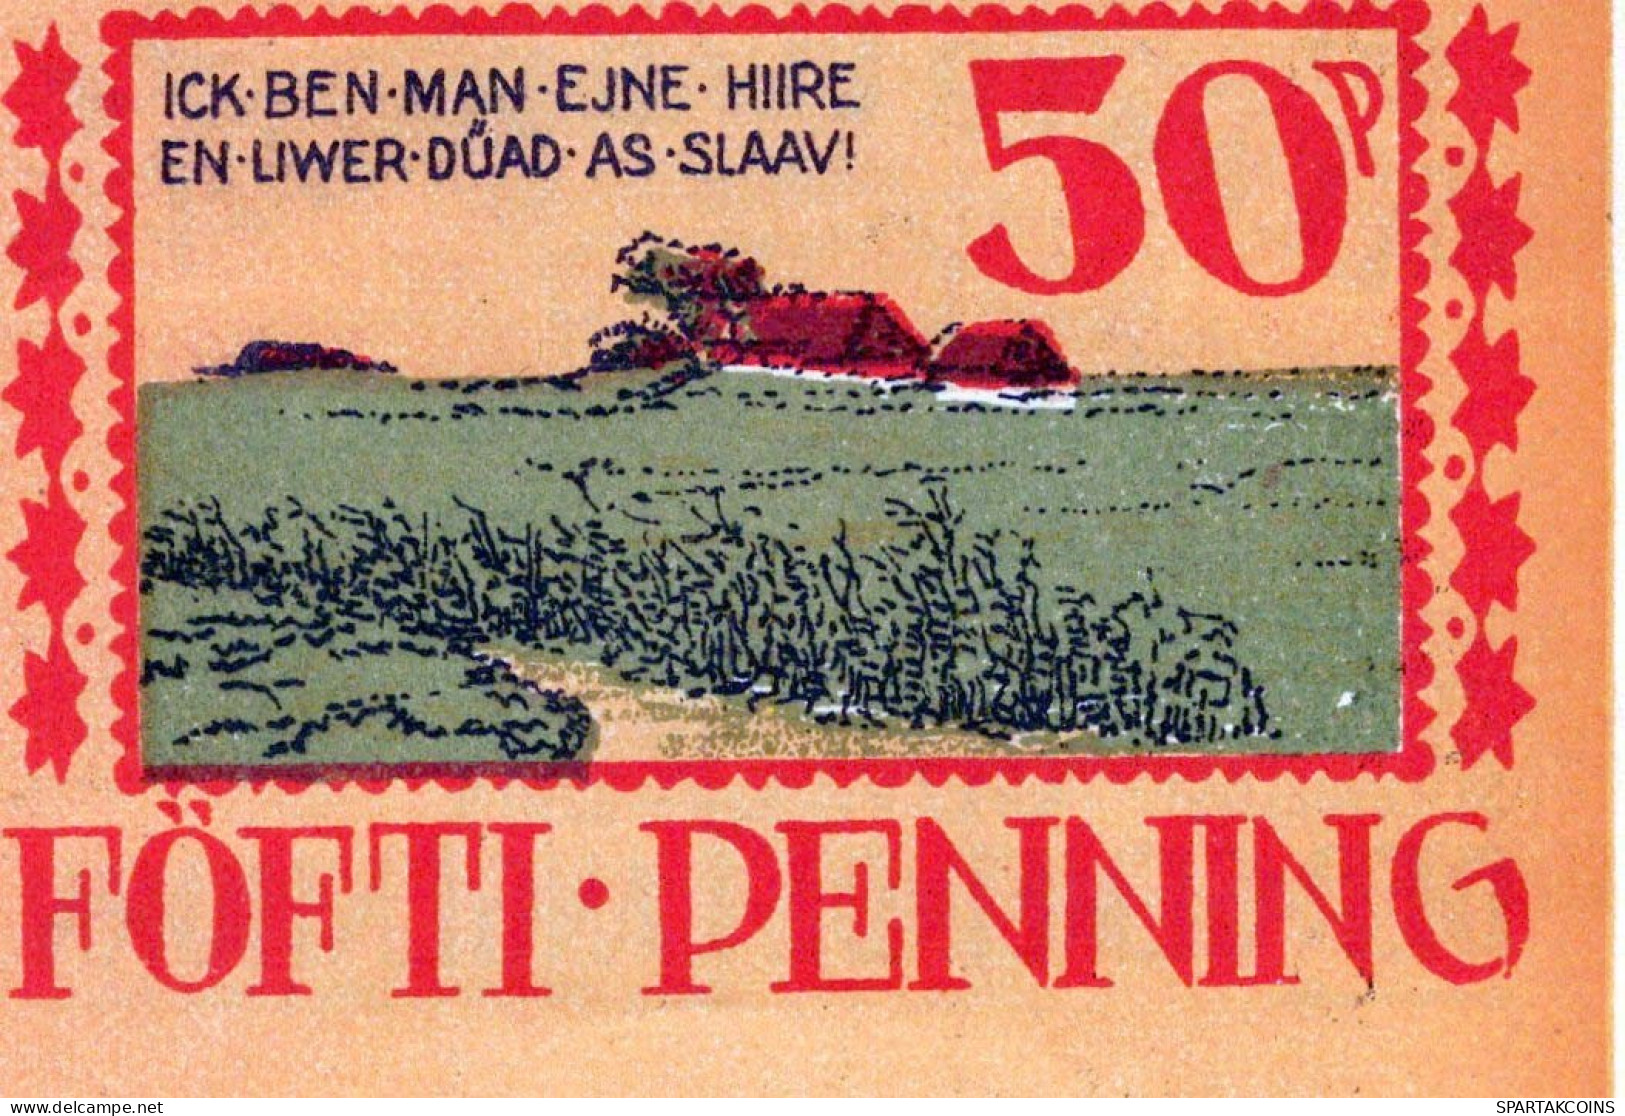 50 PFENNIG 1922 Stadt LANGENHORN IN NORDFRIESLAND UNC DEUTSCHLAND #PH660 - [11] Emissions Locales